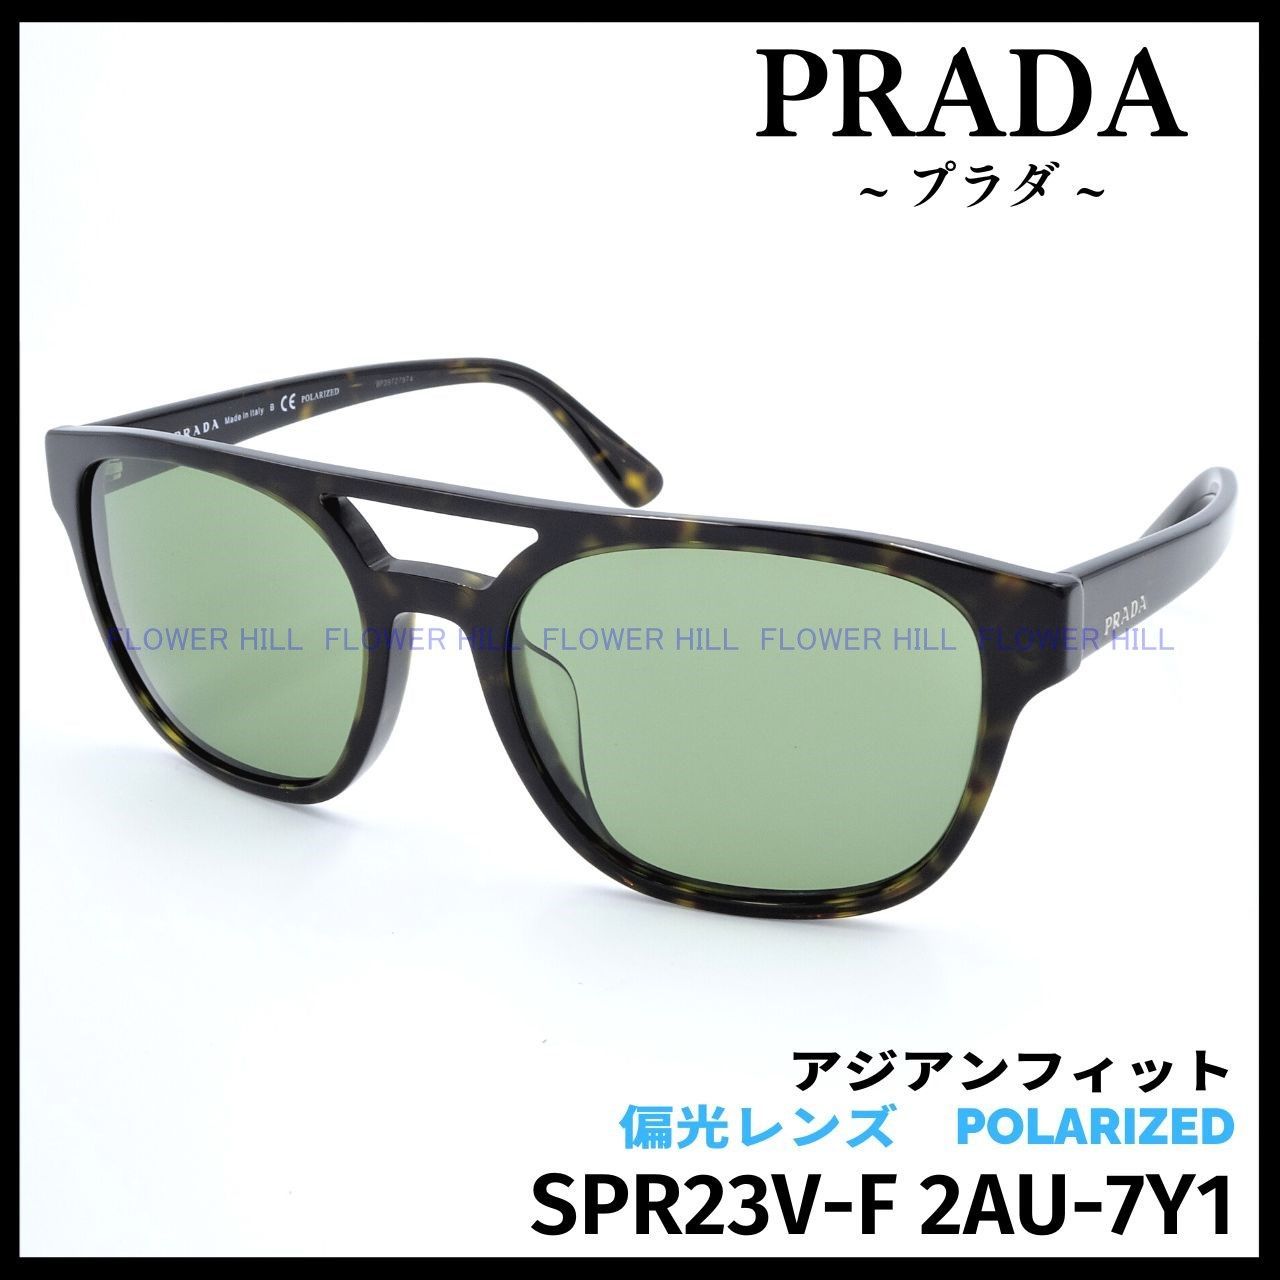 PRADA プラダ 偏光サングラス SPR23V-F 2AU ハバナ アジアンフィット